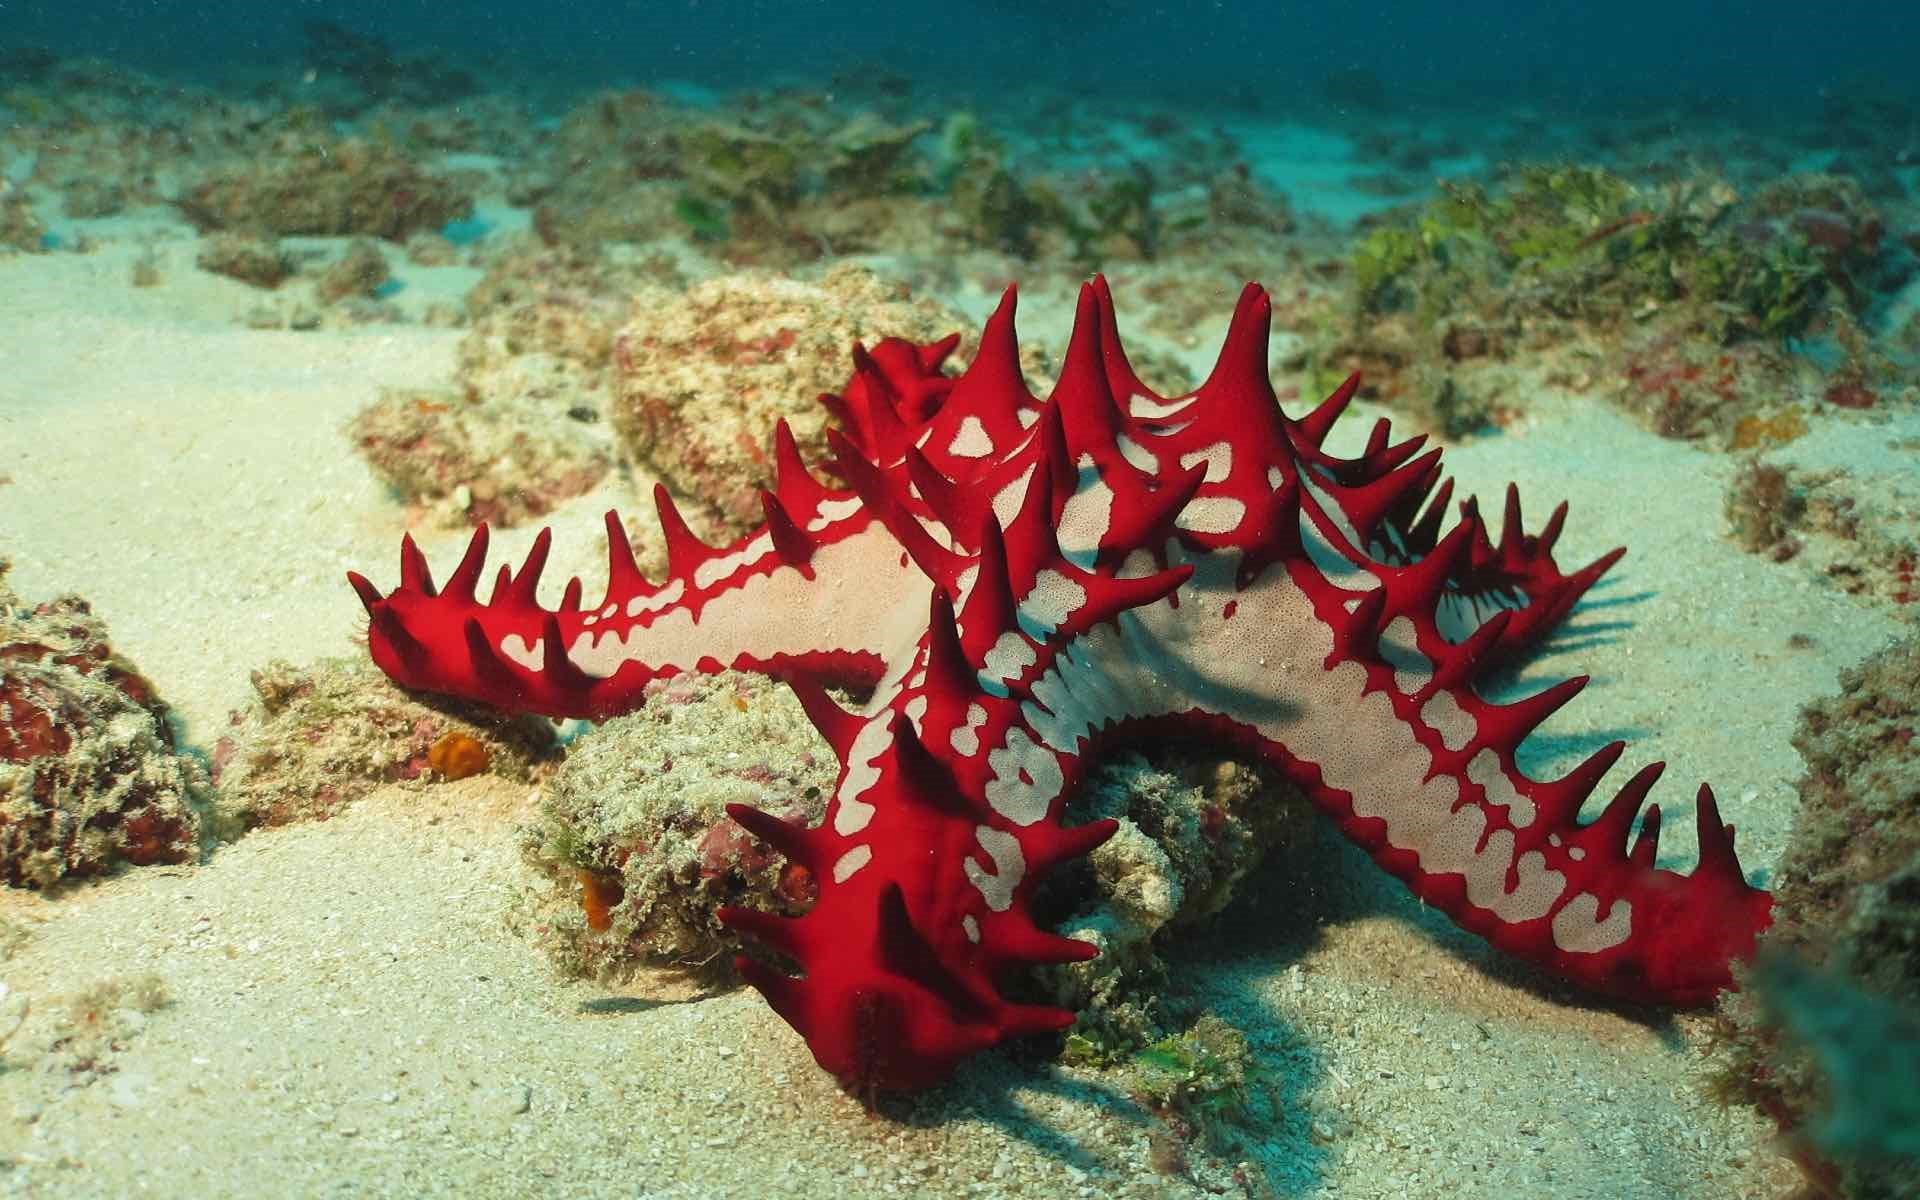 Kenya starfish